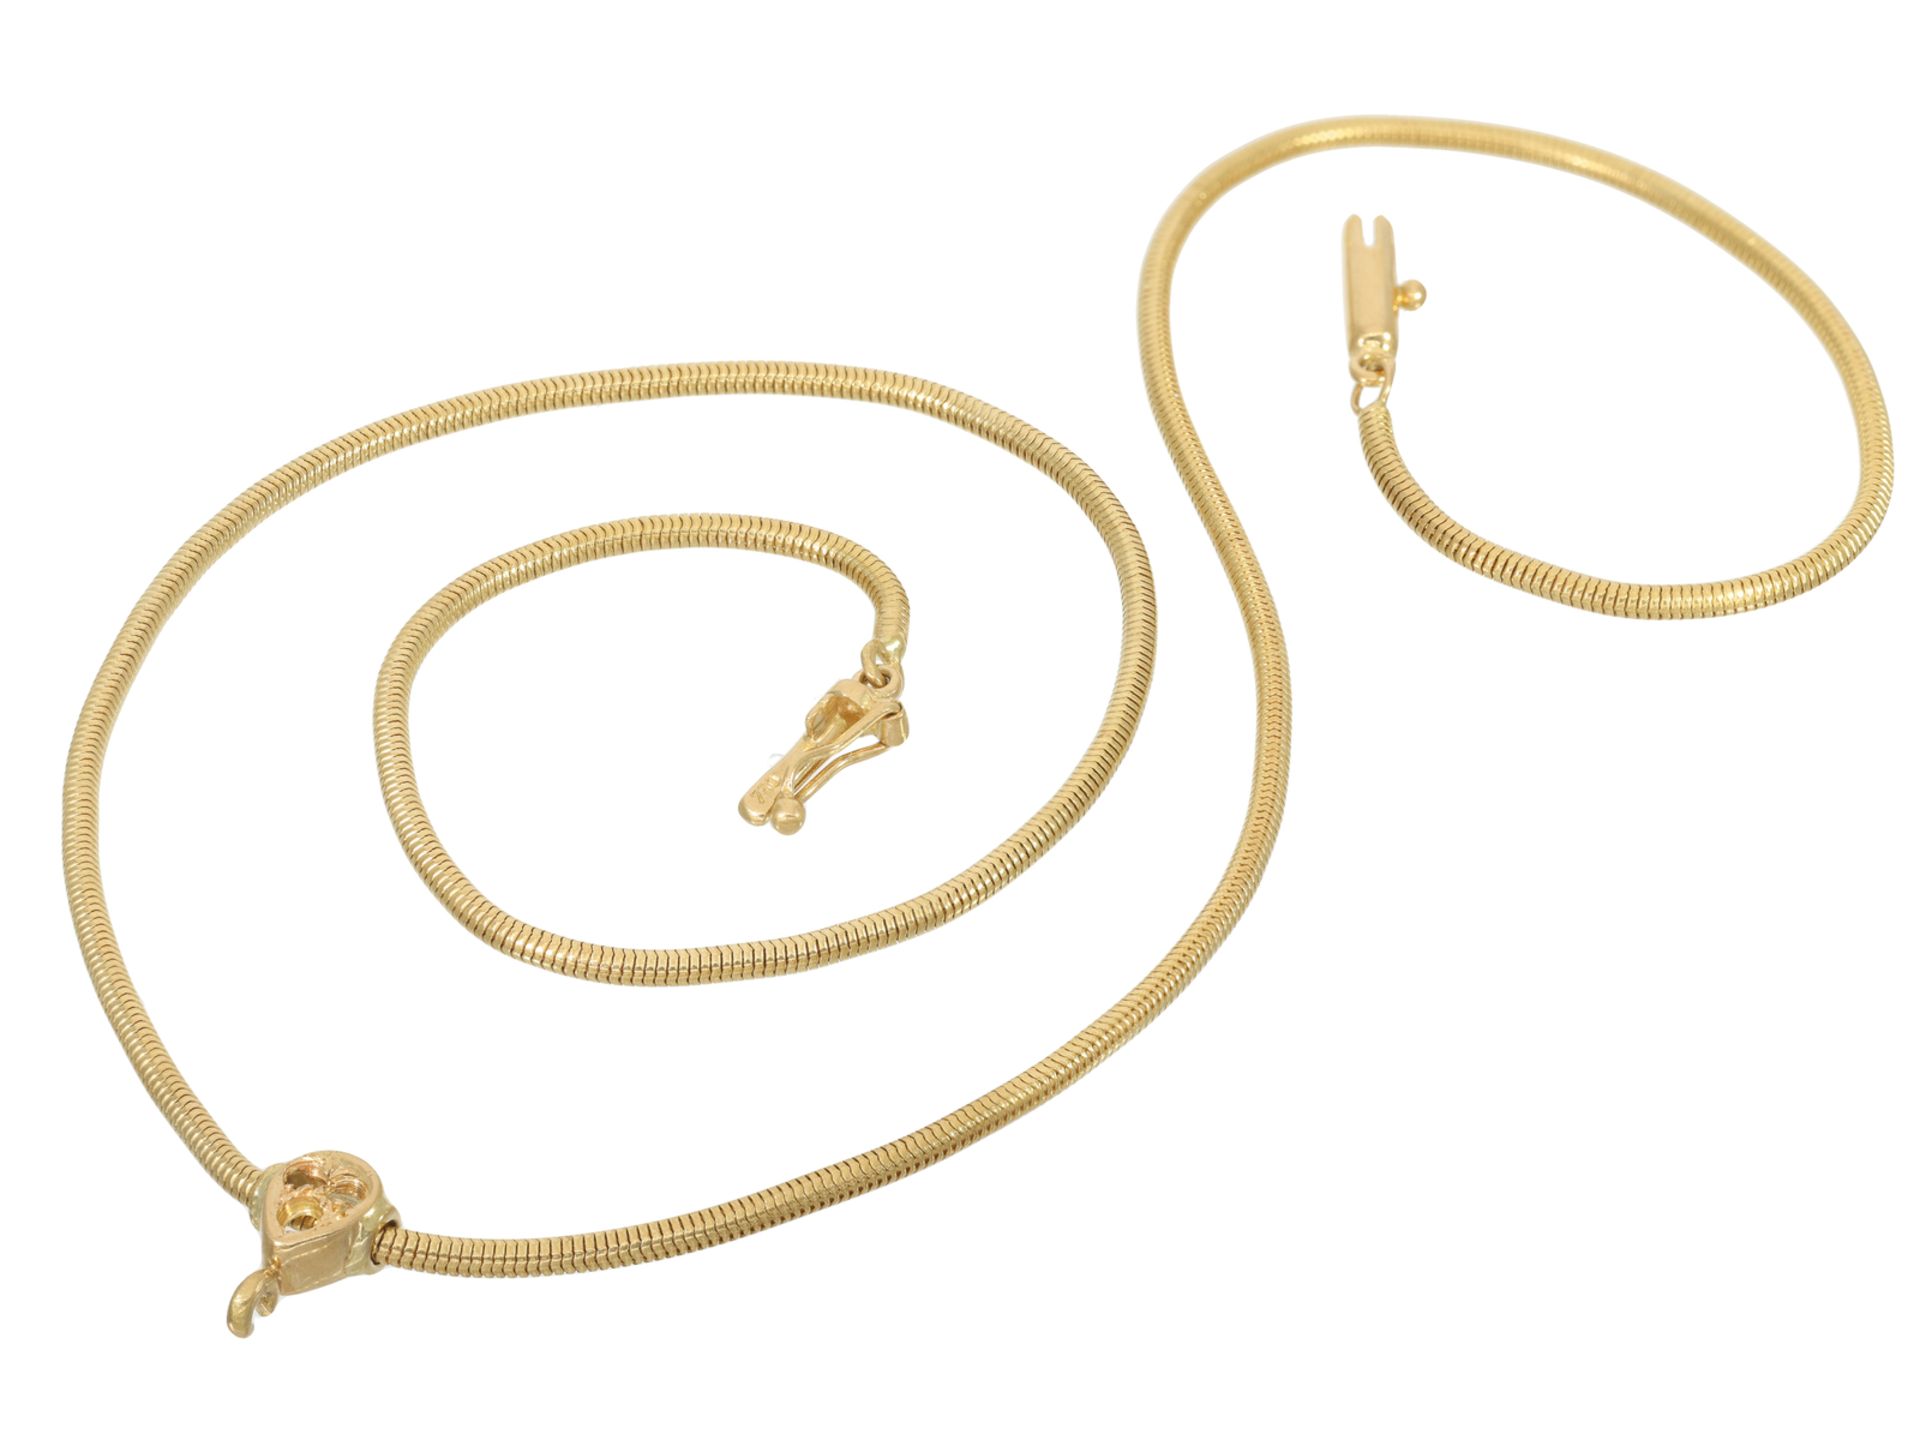 Kette/Collier: hochwertige goldene Schlangenkette der Marke "Lüth Bijoux" aus 18K Gelbgold